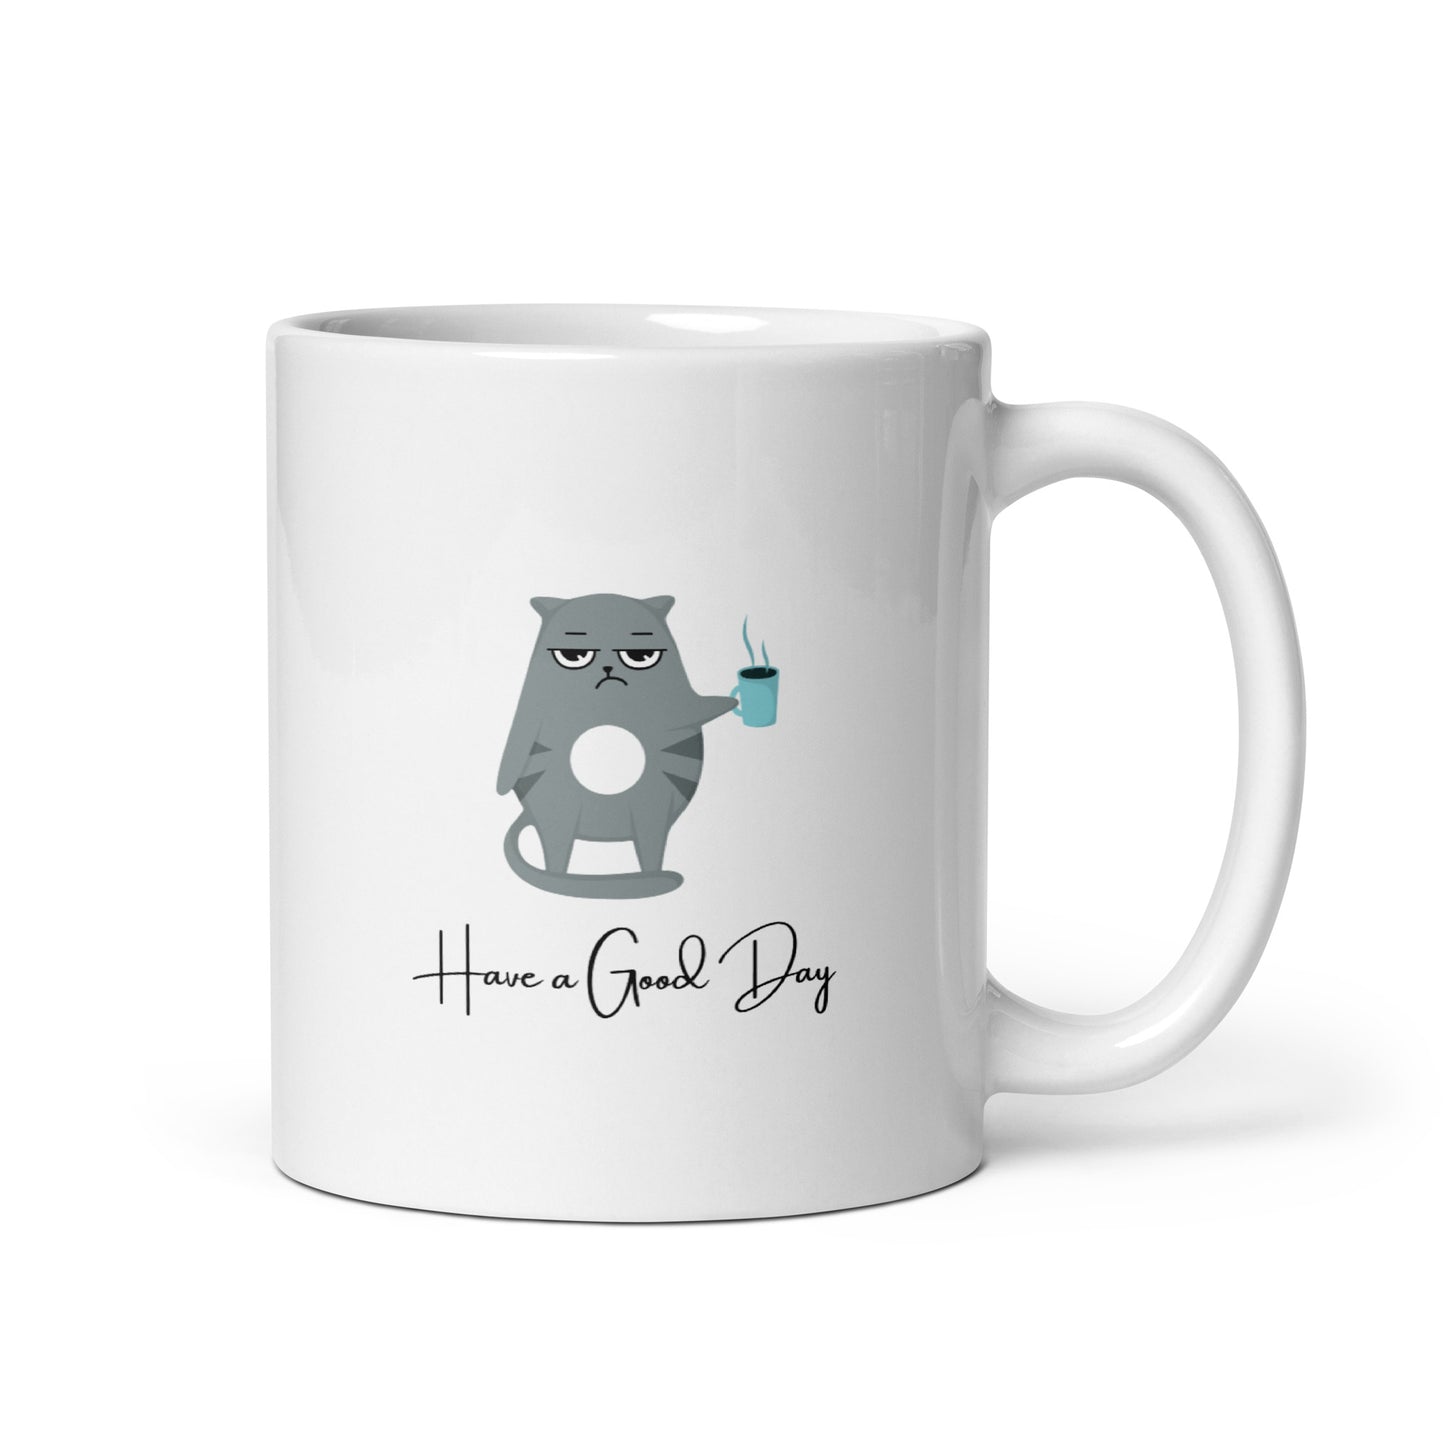 "Good Day Cat" White Glossy Mug